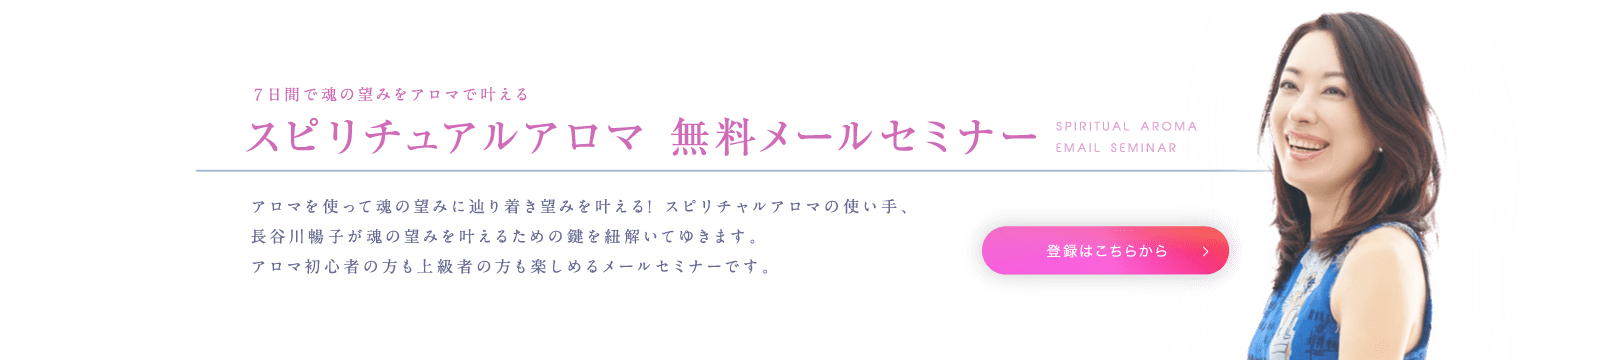 シータヒーリングを東京・目黒で提供するヒーリングサロン_シータヒーリングほかスピリチュアルアロマ・レインドロップなど提供